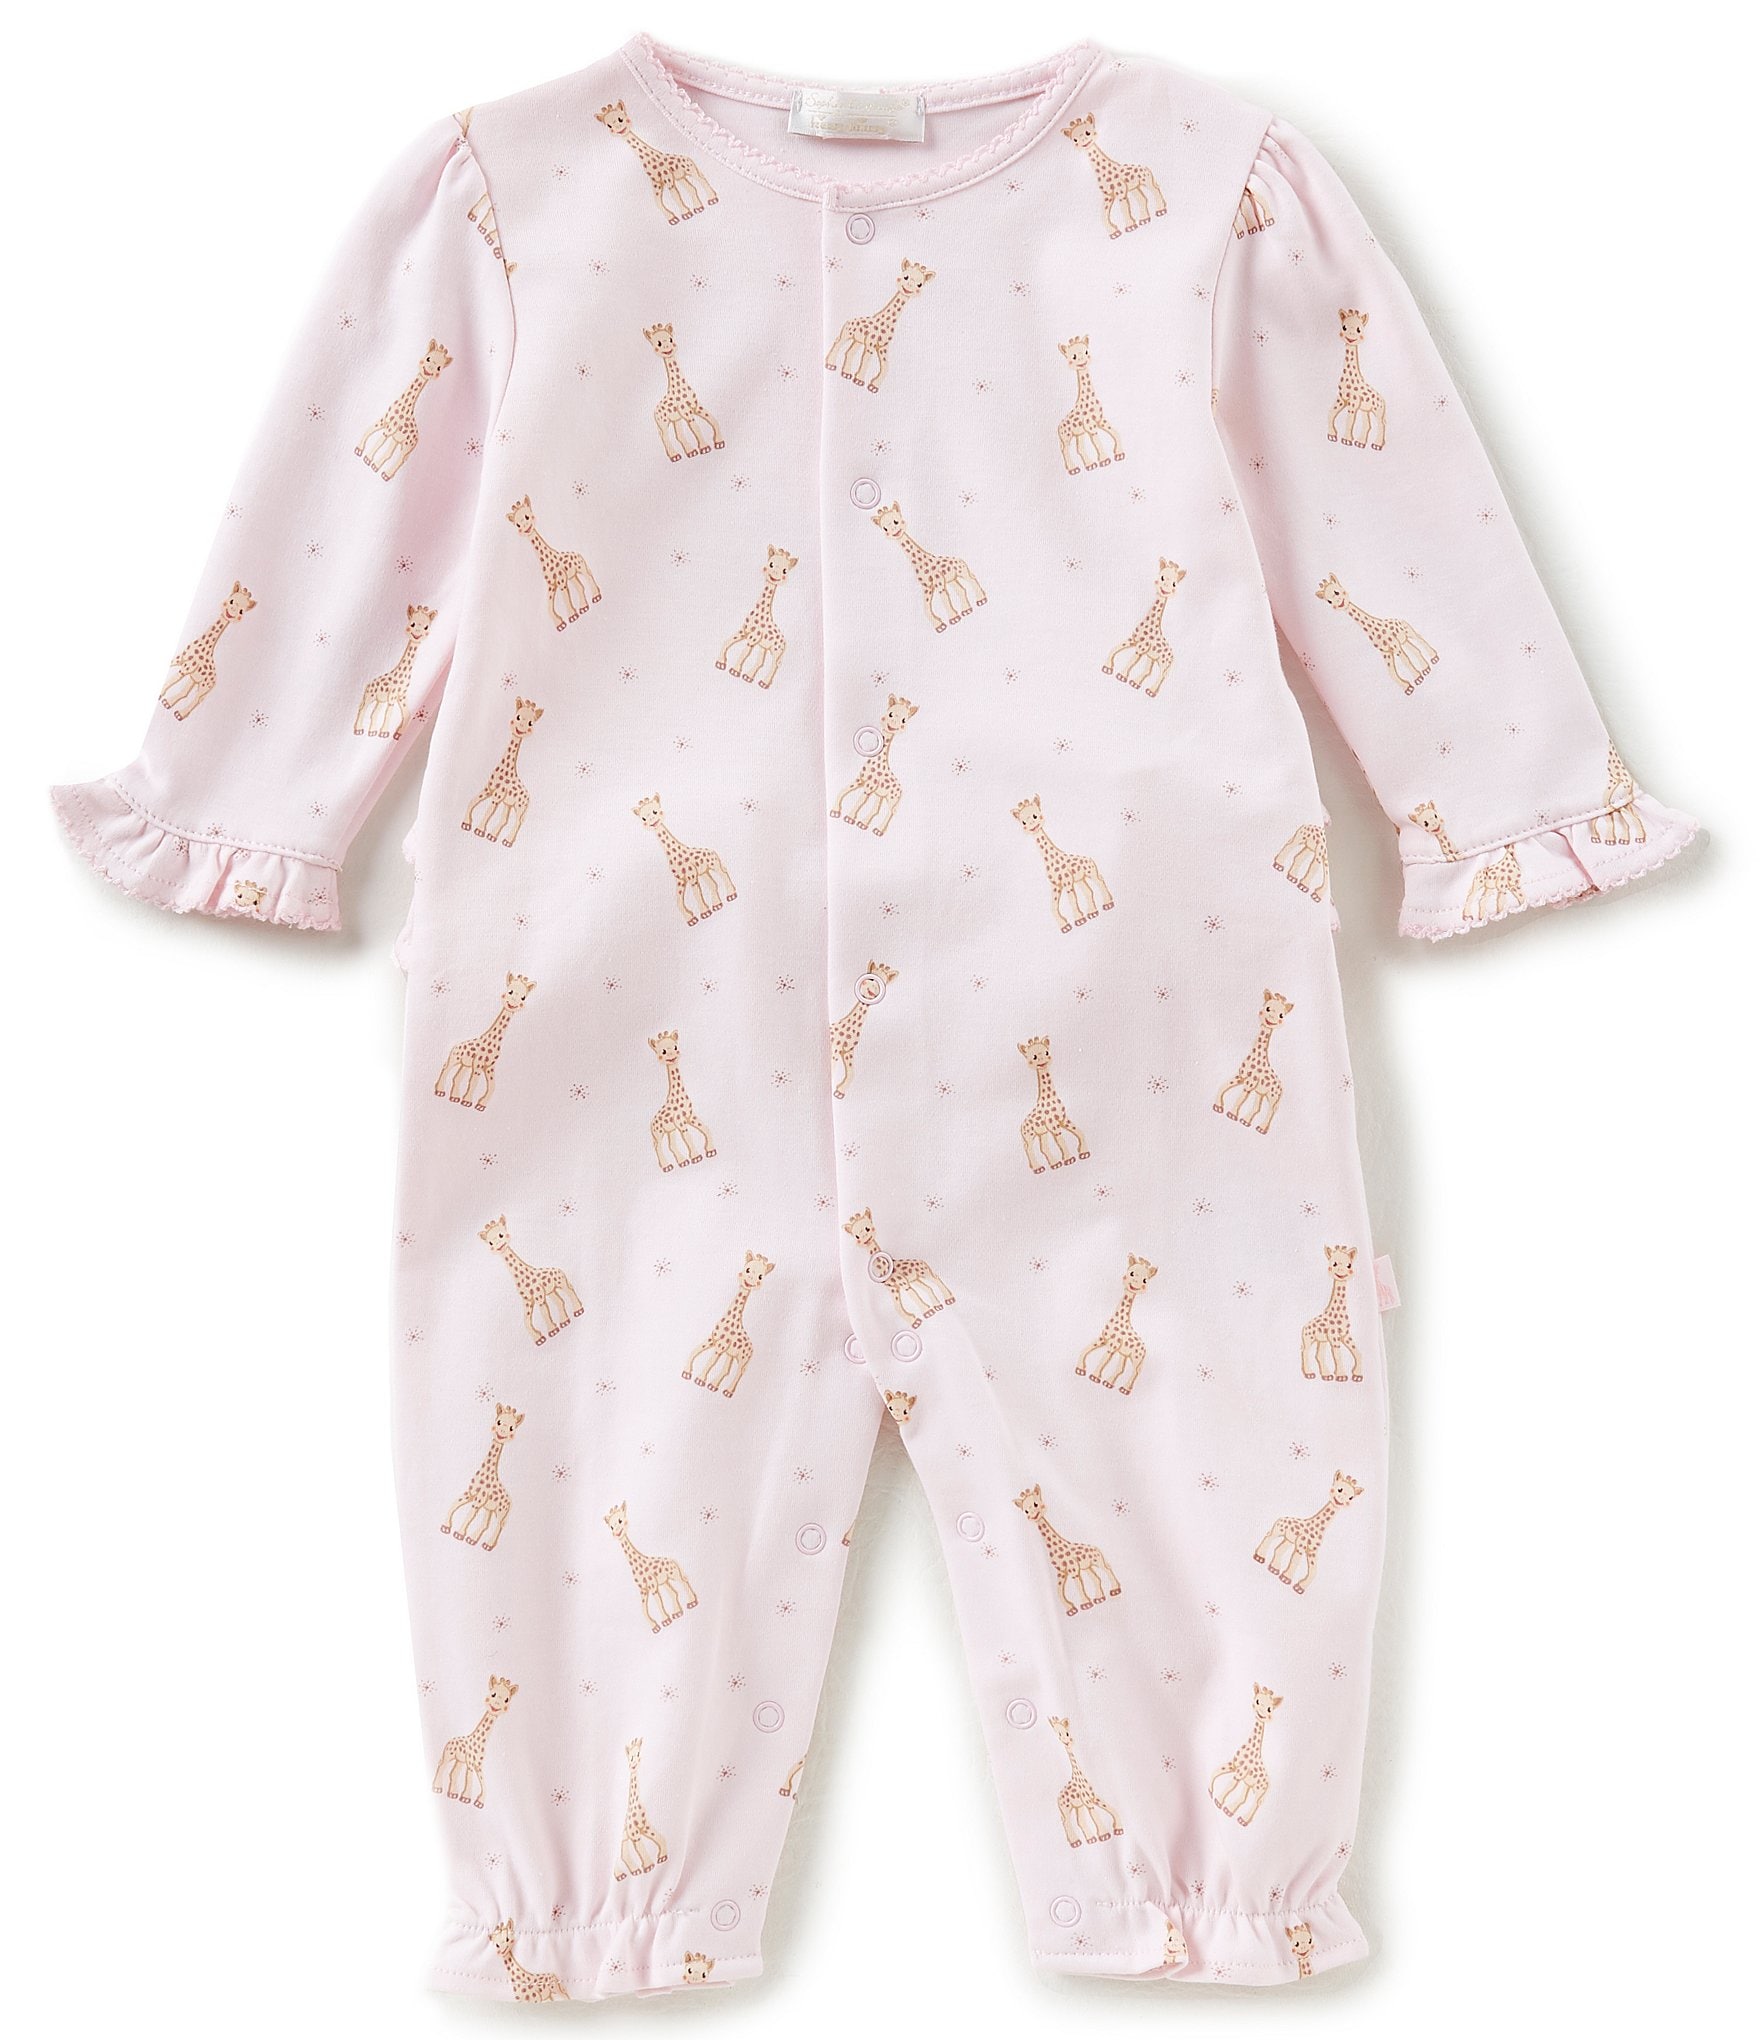 Sophie La Girafe Baby Girls White & Pink T-Shirt Set